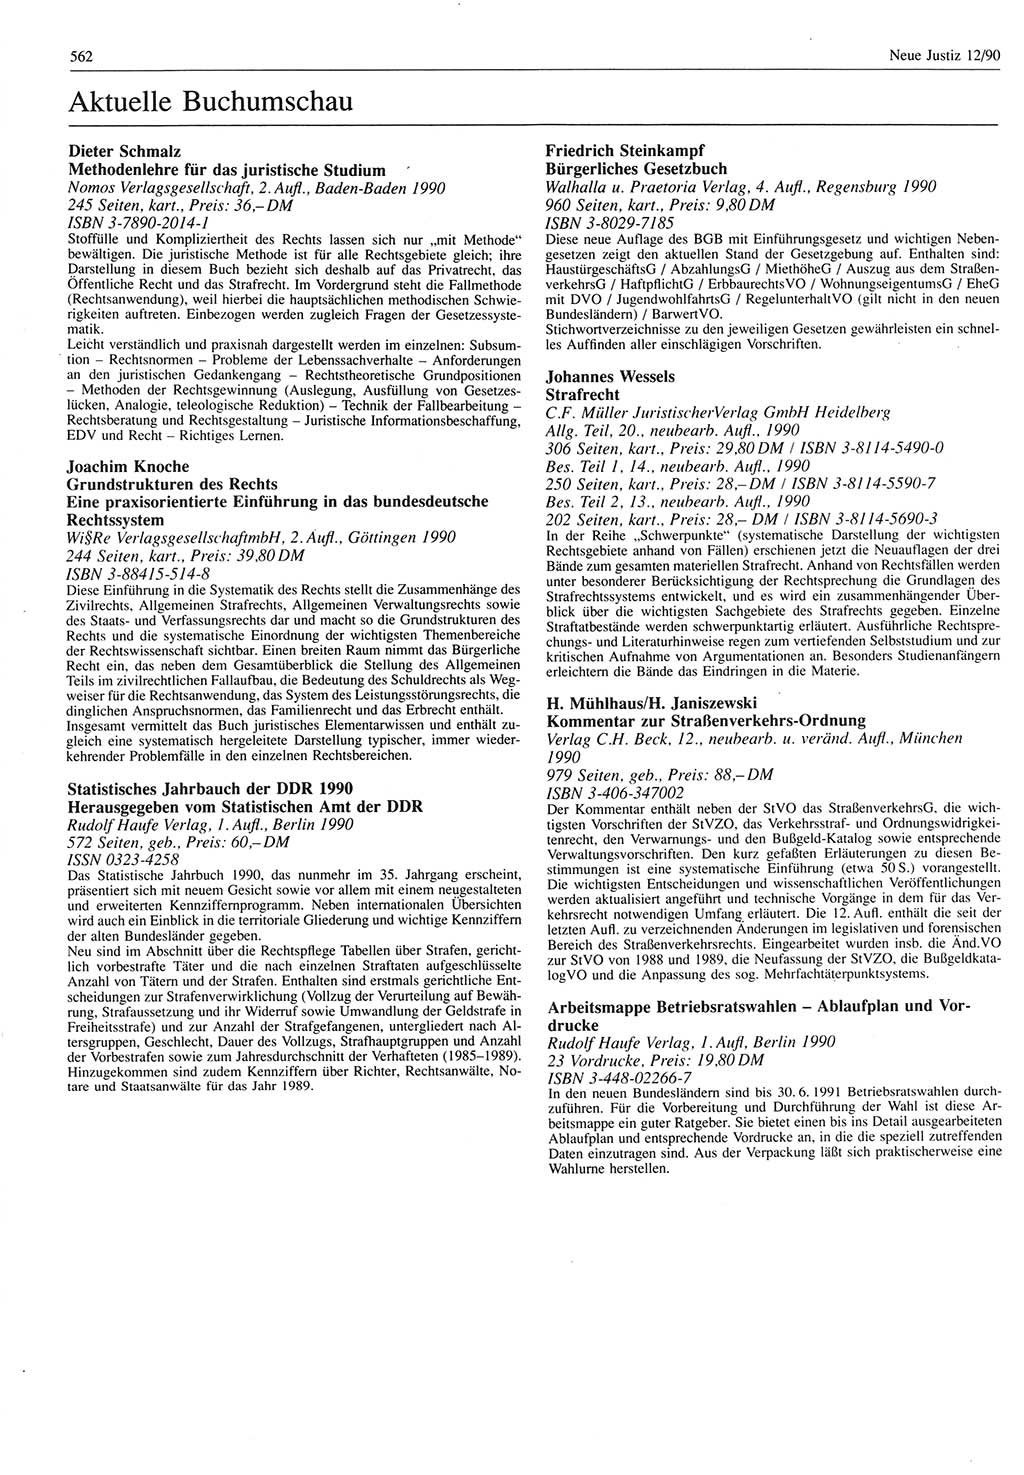 Neue Justiz (NJ), Zeitschrift für Rechtsetzung und Rechtsanwendung [Deutsche Demokratische Republik (DDR)], 44. Jahrgang 1990, Seite 562 (NJ DDR 1990, S. 562)